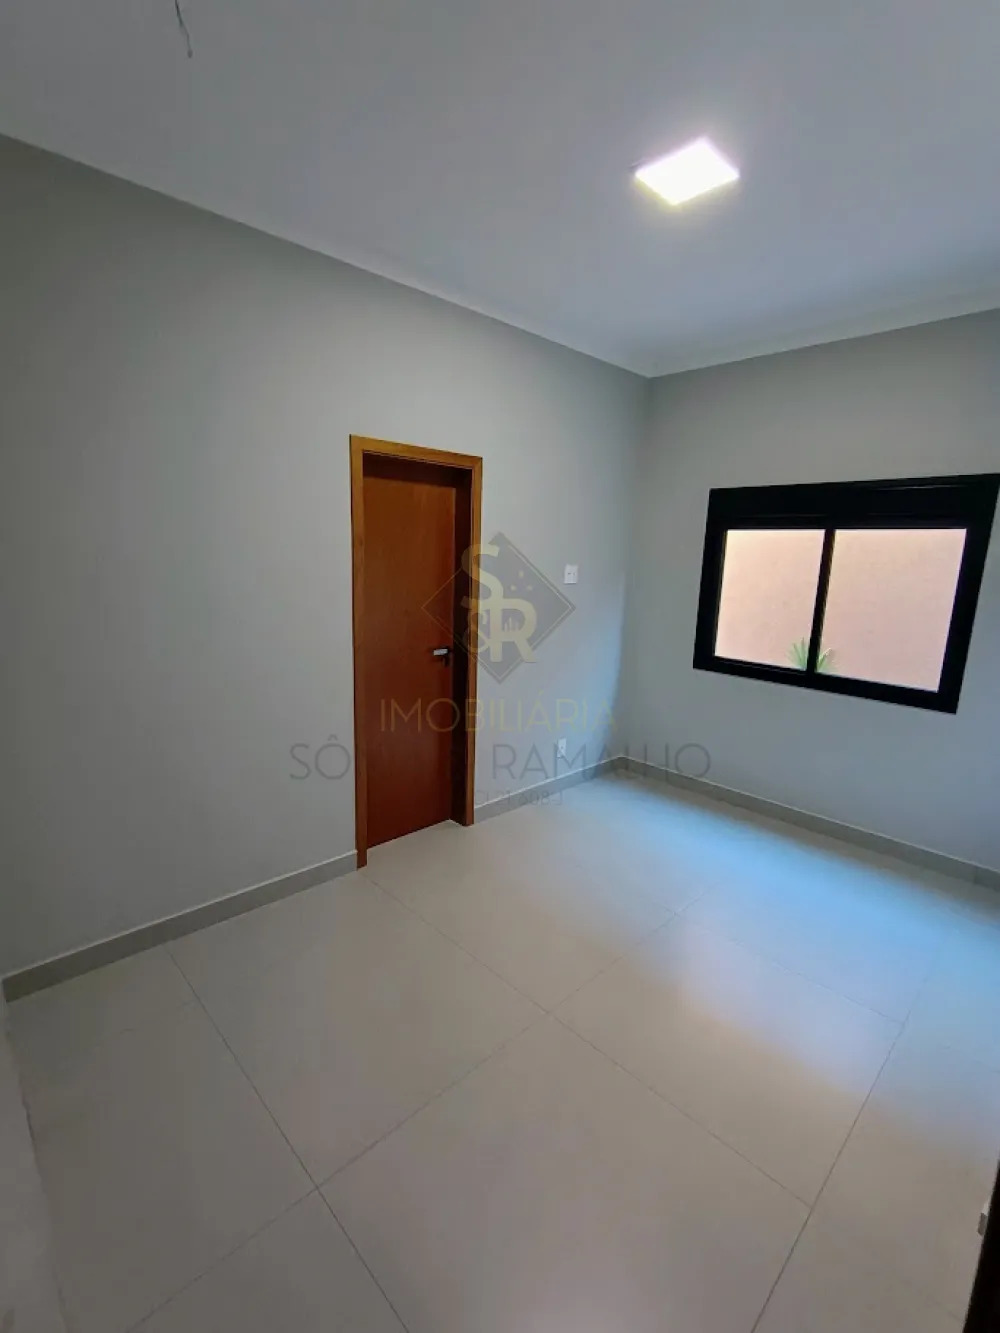 Comprar Casas Residenciais / Condomínio em Ribeirão Preto R$ 1.050.000,00 - Foto 10